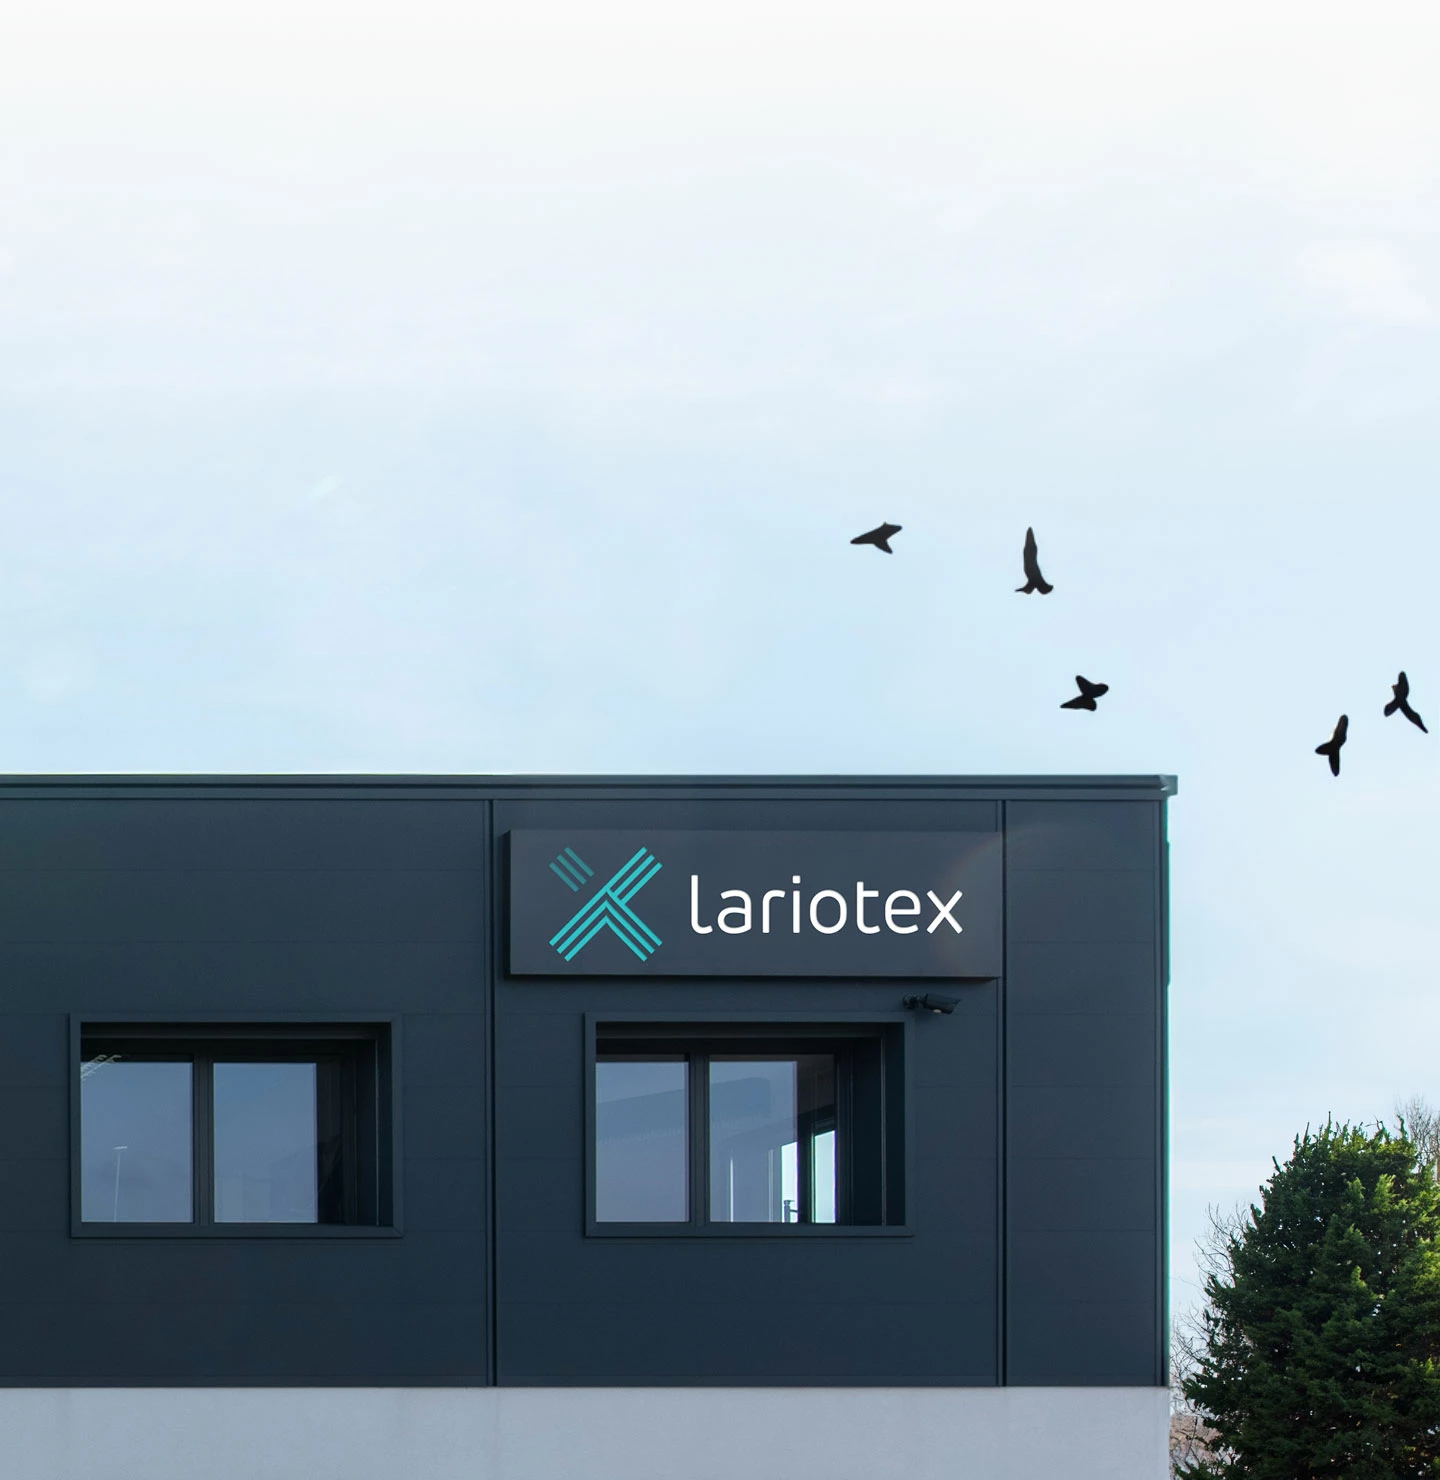 Lariotex building